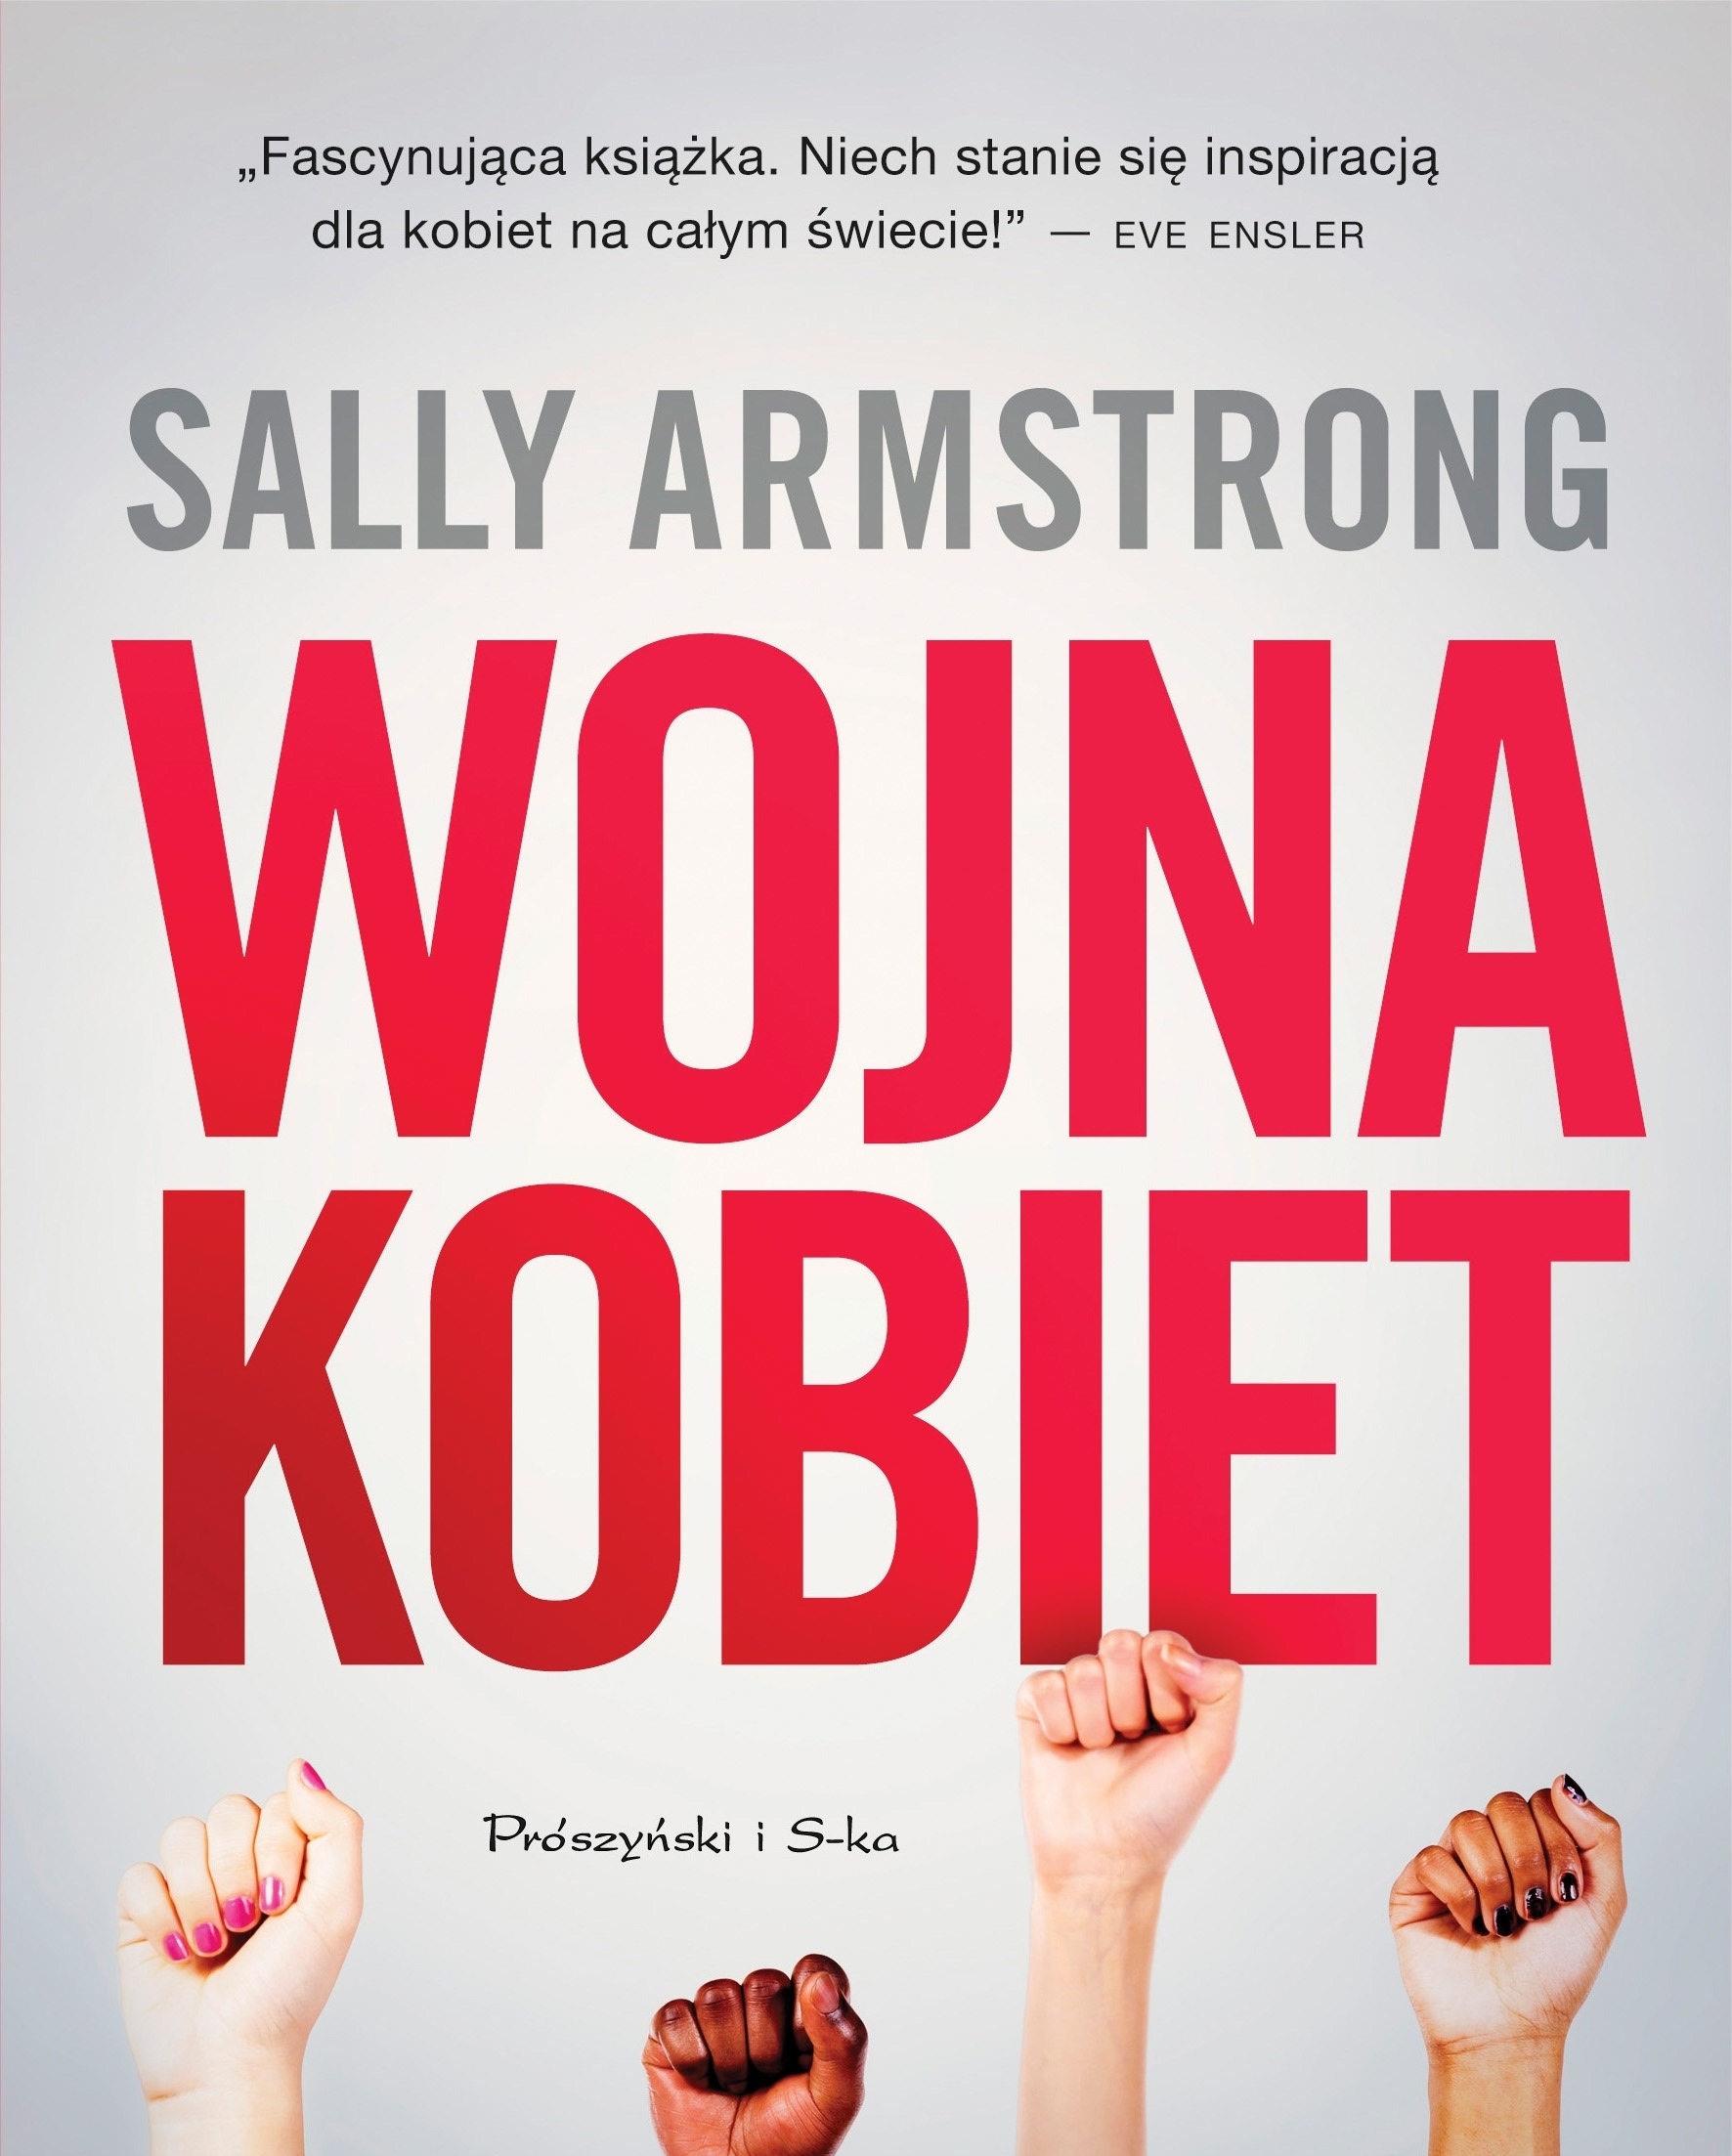 Sally Armstrong, "Wojna kobiet" - reportaż autorki "Monologów waginy" już w księgarniach